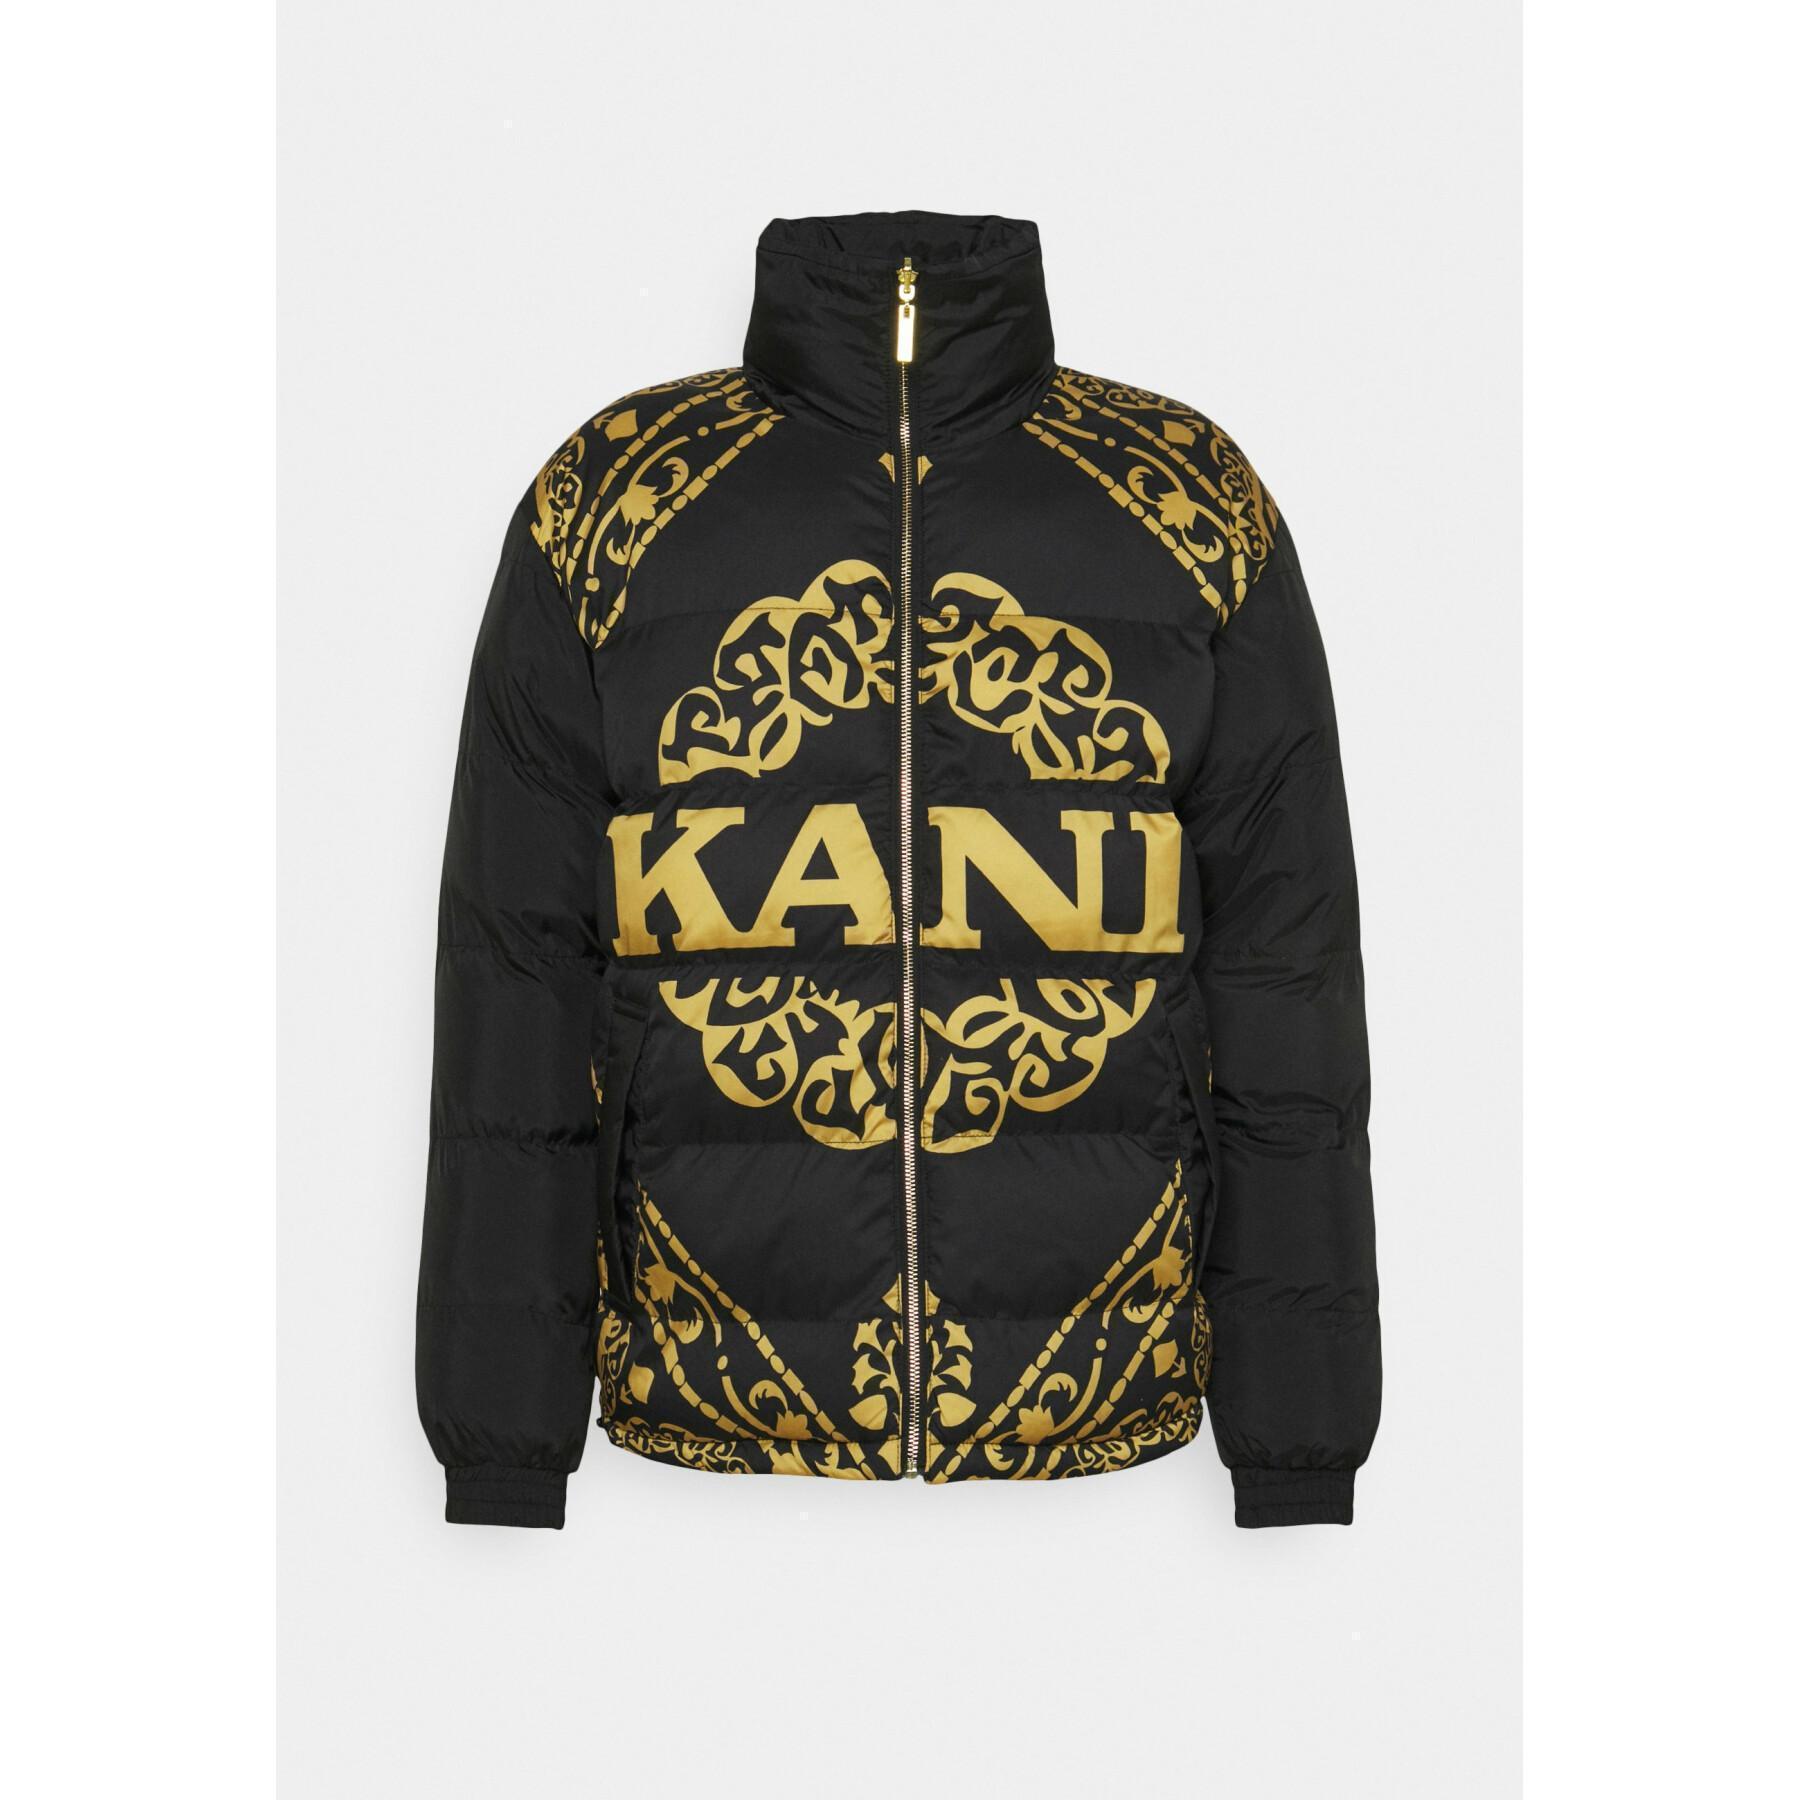 Jacket Karl Kani Retro Reversible Puffer